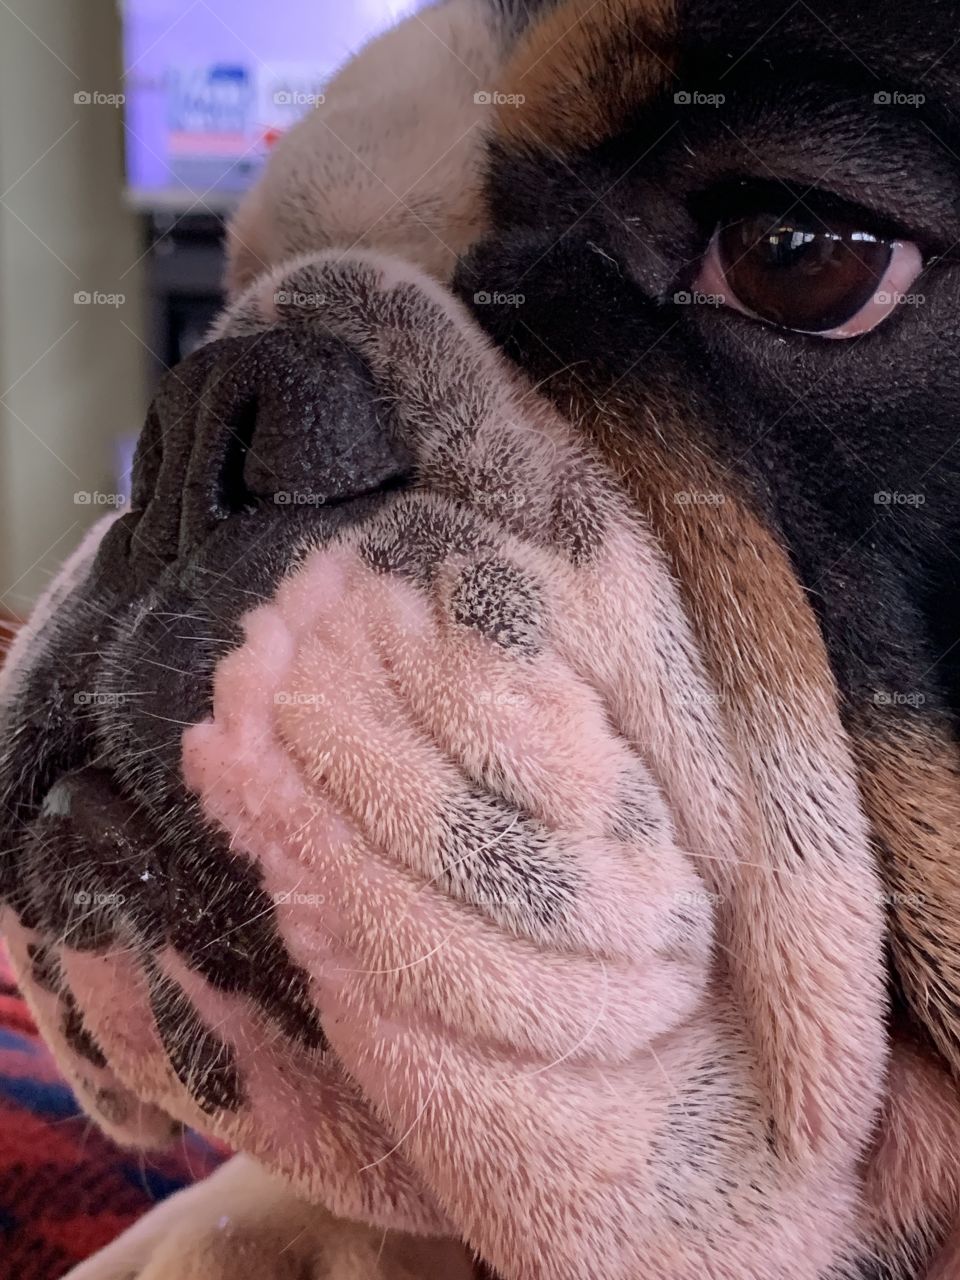 Bulldog wrinkled face